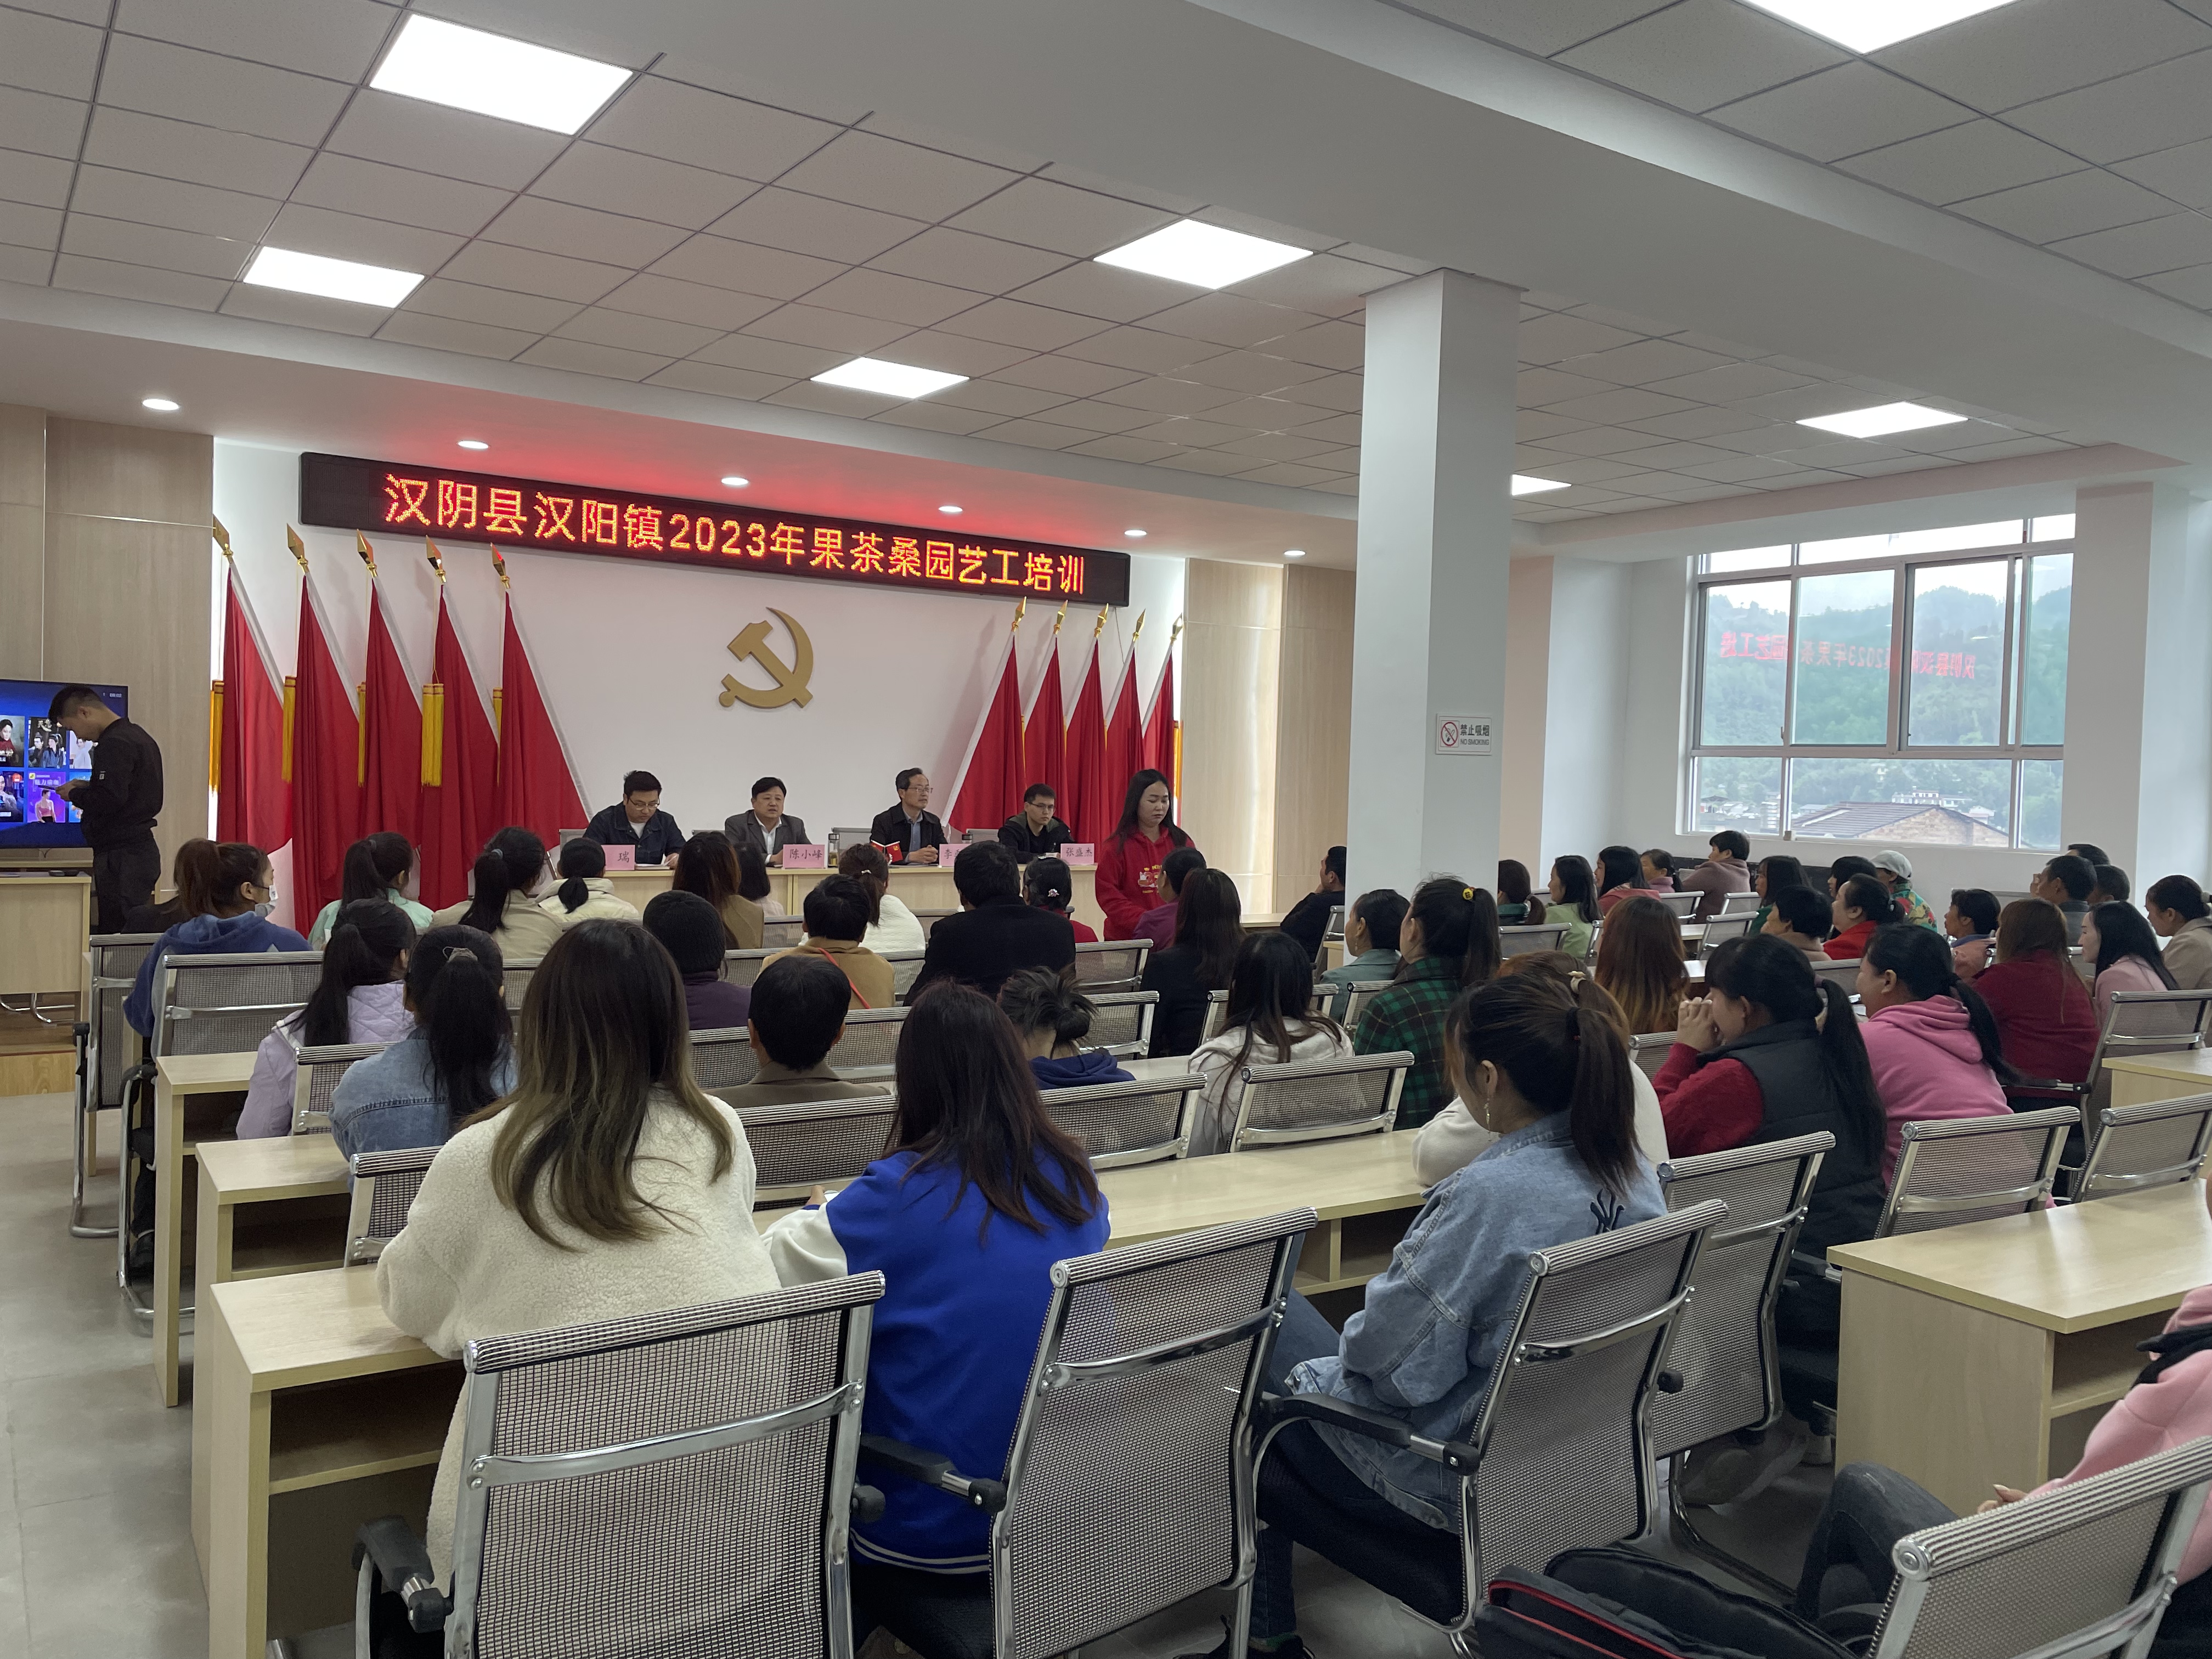 汉阳镇2023年度职业技能培训工作正式开始